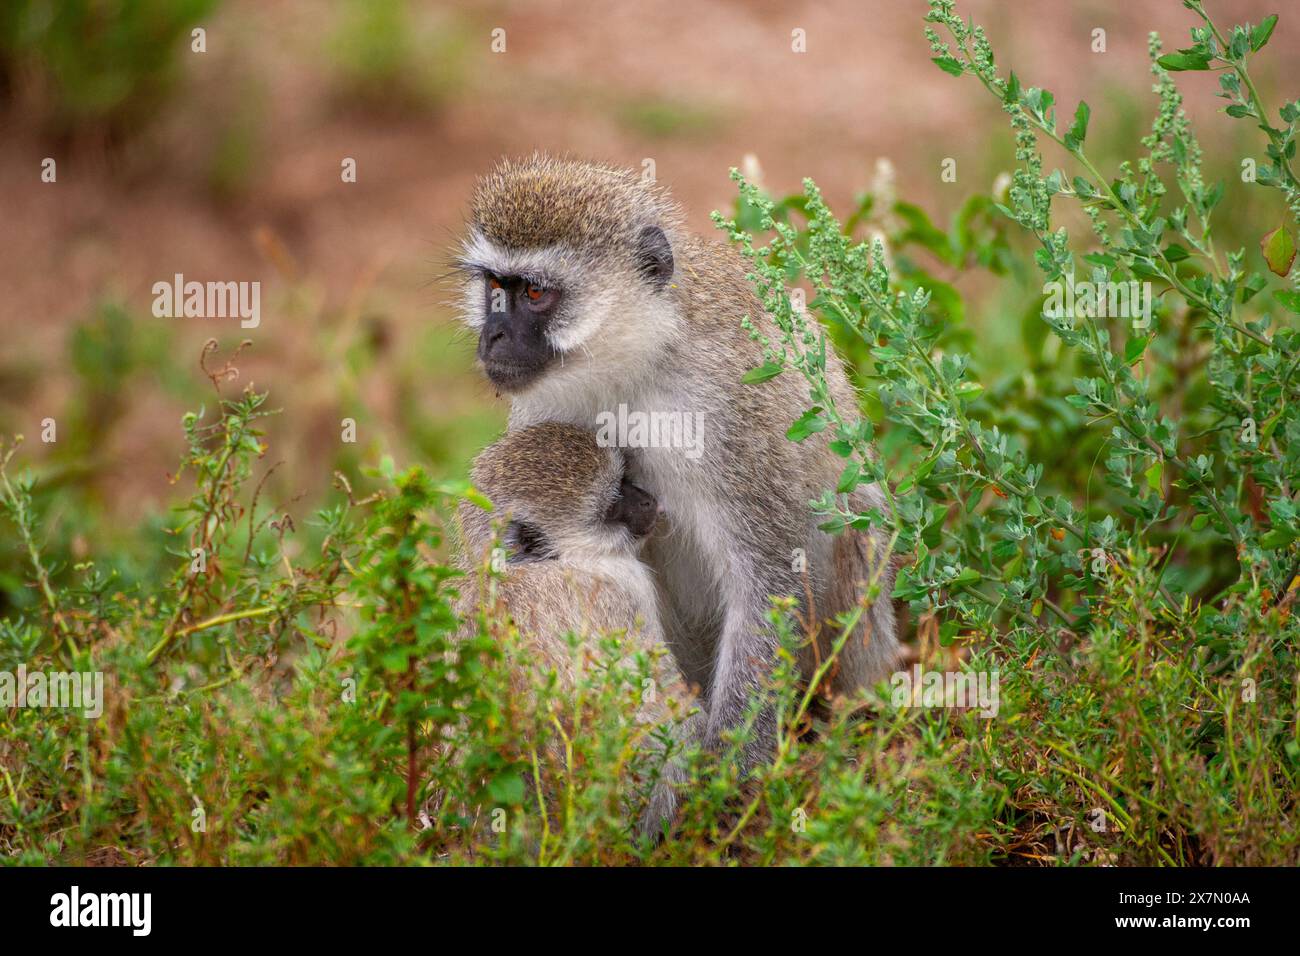 Scimmia Vervet (Chlorocebus pygerythrus). Madre e giovanile queste scimmie sono originarie dell'Africa. Si trovano principalmente in Africa meridionale, AS Foto Stock